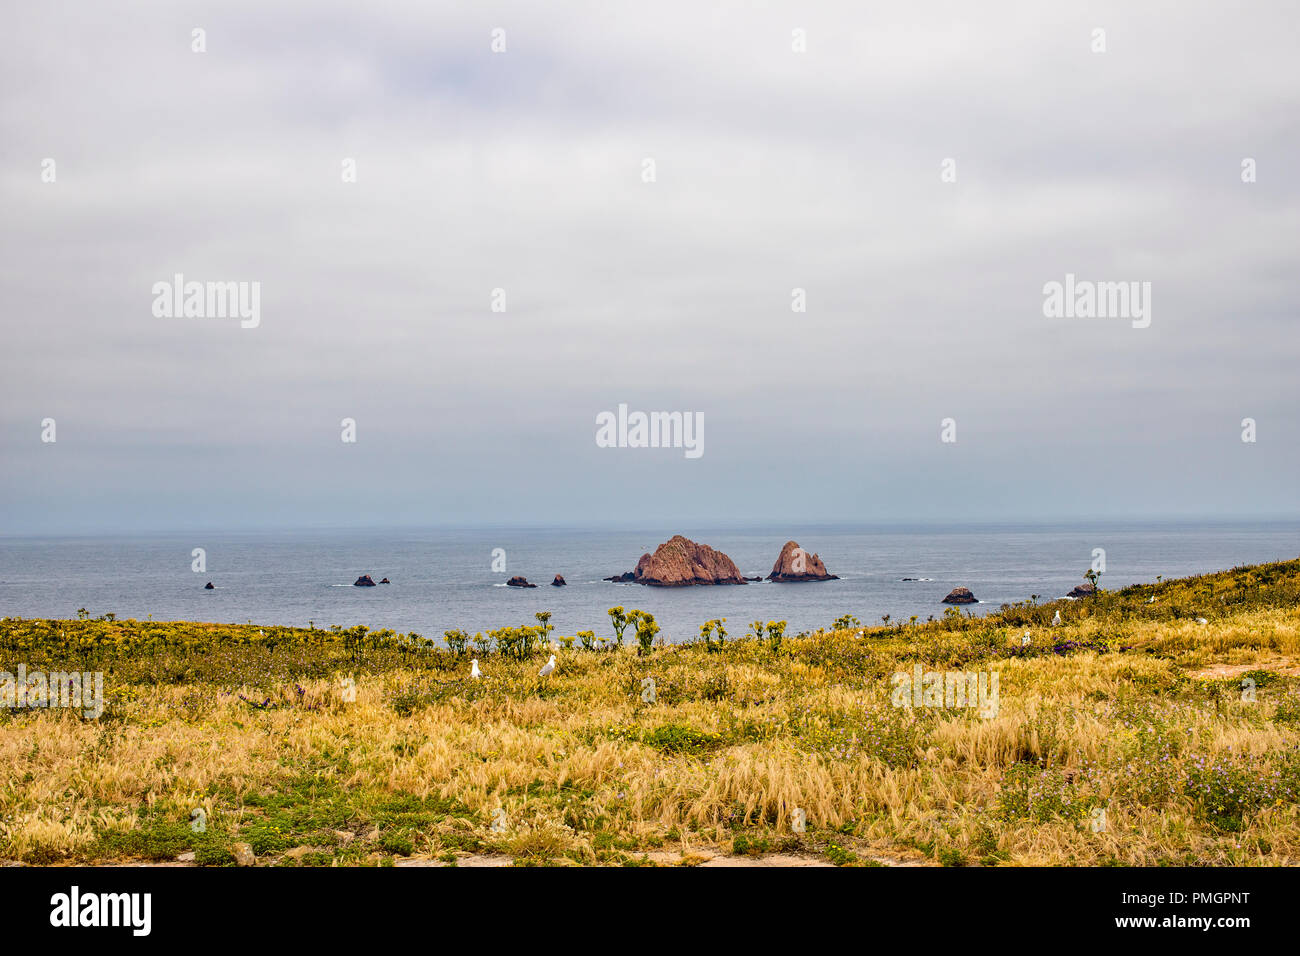 Berlengas Inseln, Portugal - Blick von einer der Inseln im Berlenga Archilpelago Stockfoto